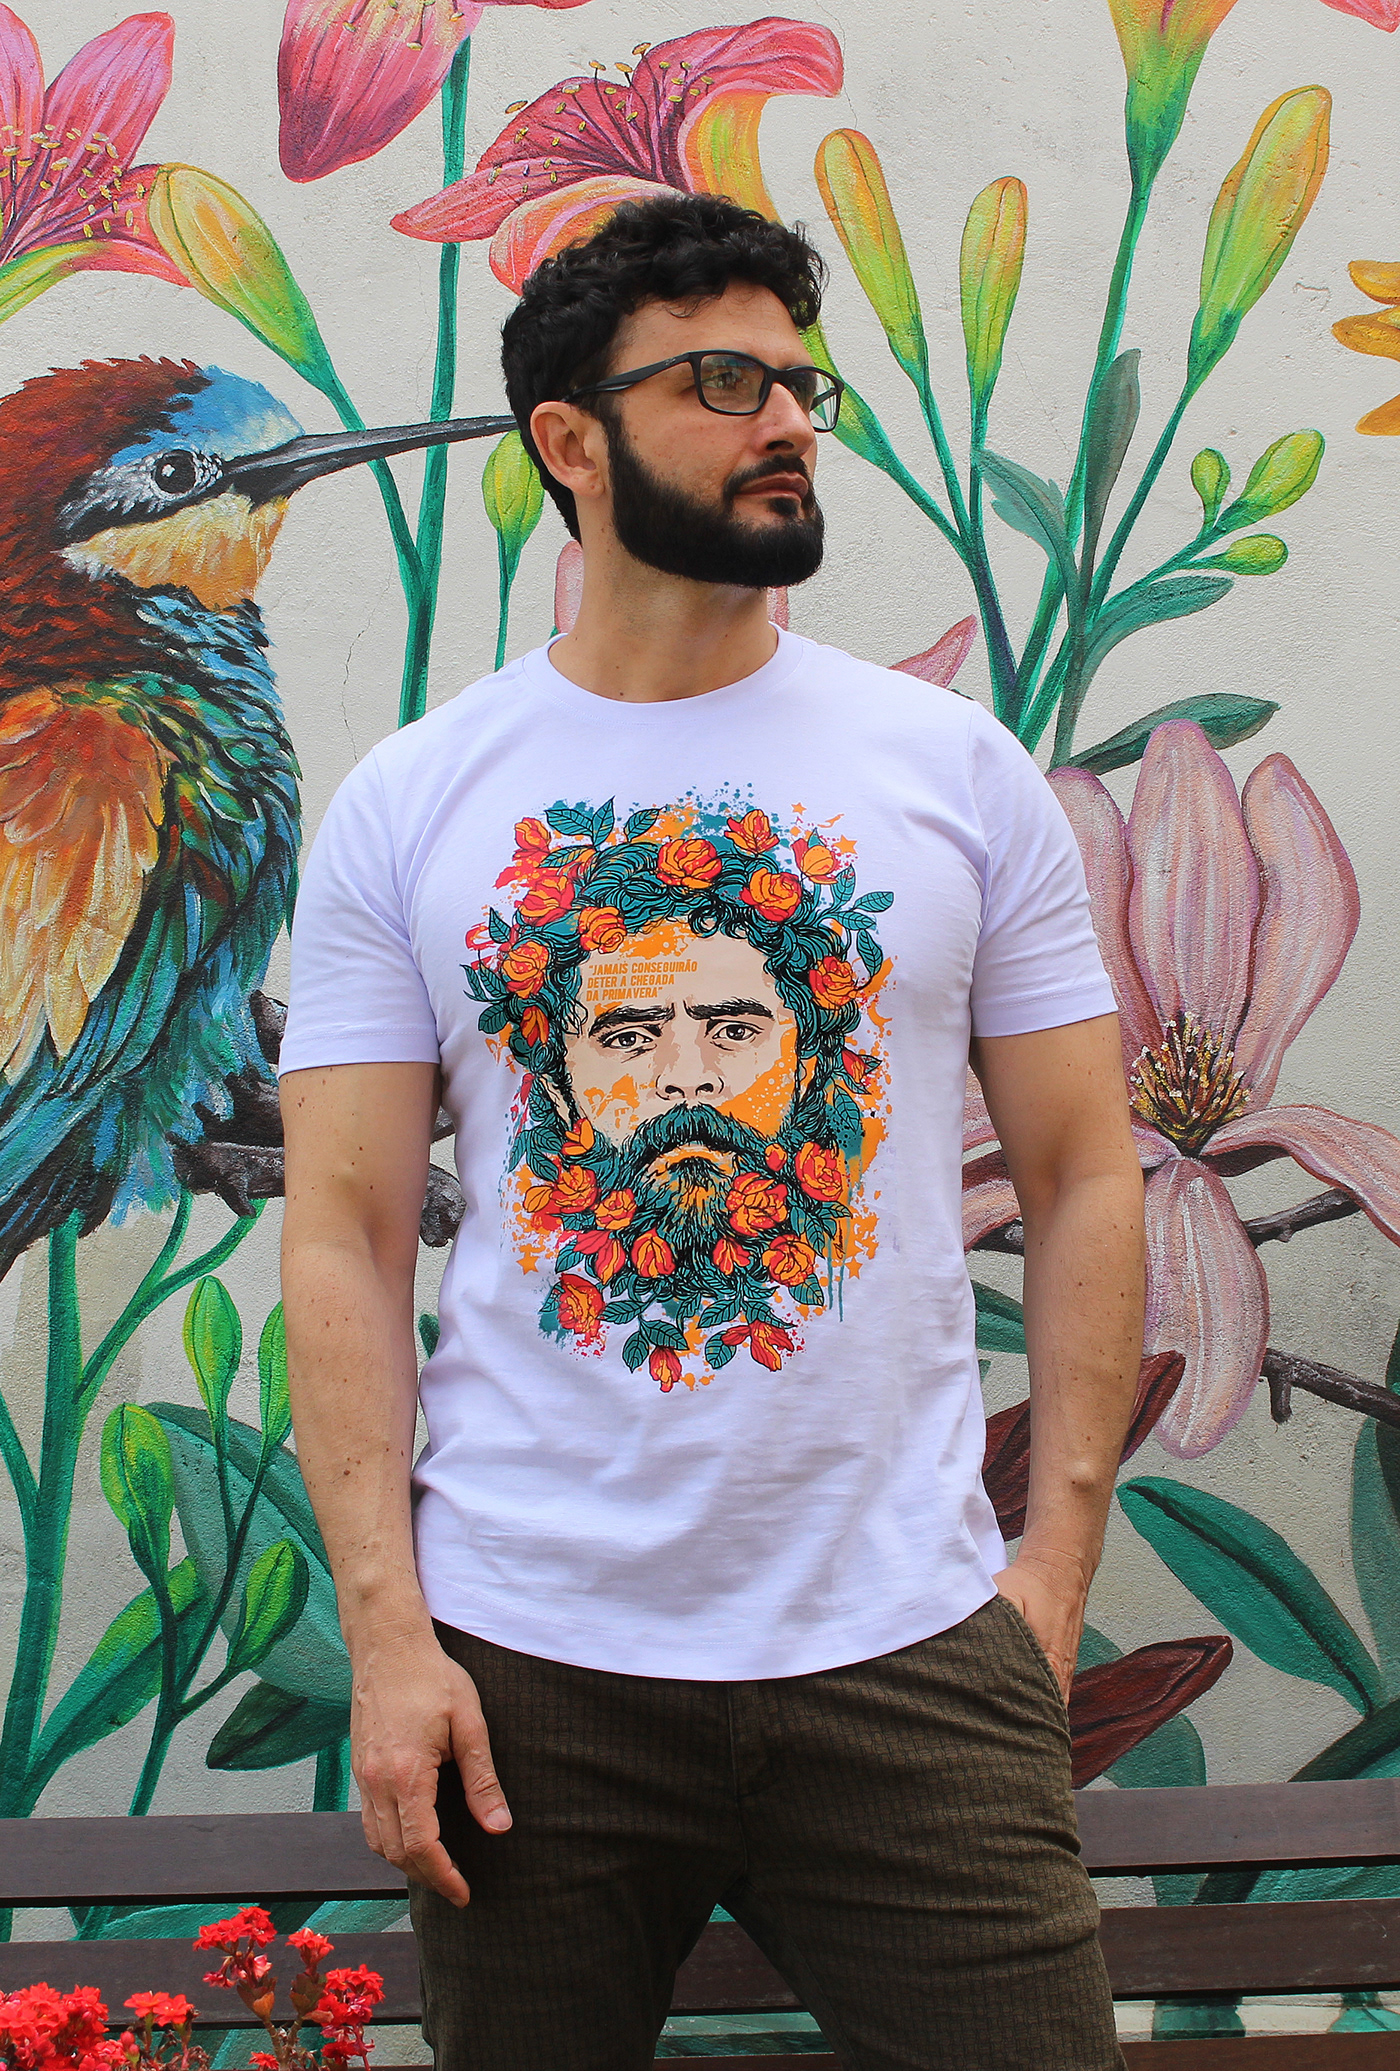 Brasil camisa camiseta Estampa Lula lula livre presidente primavera silkscreen t-shirt